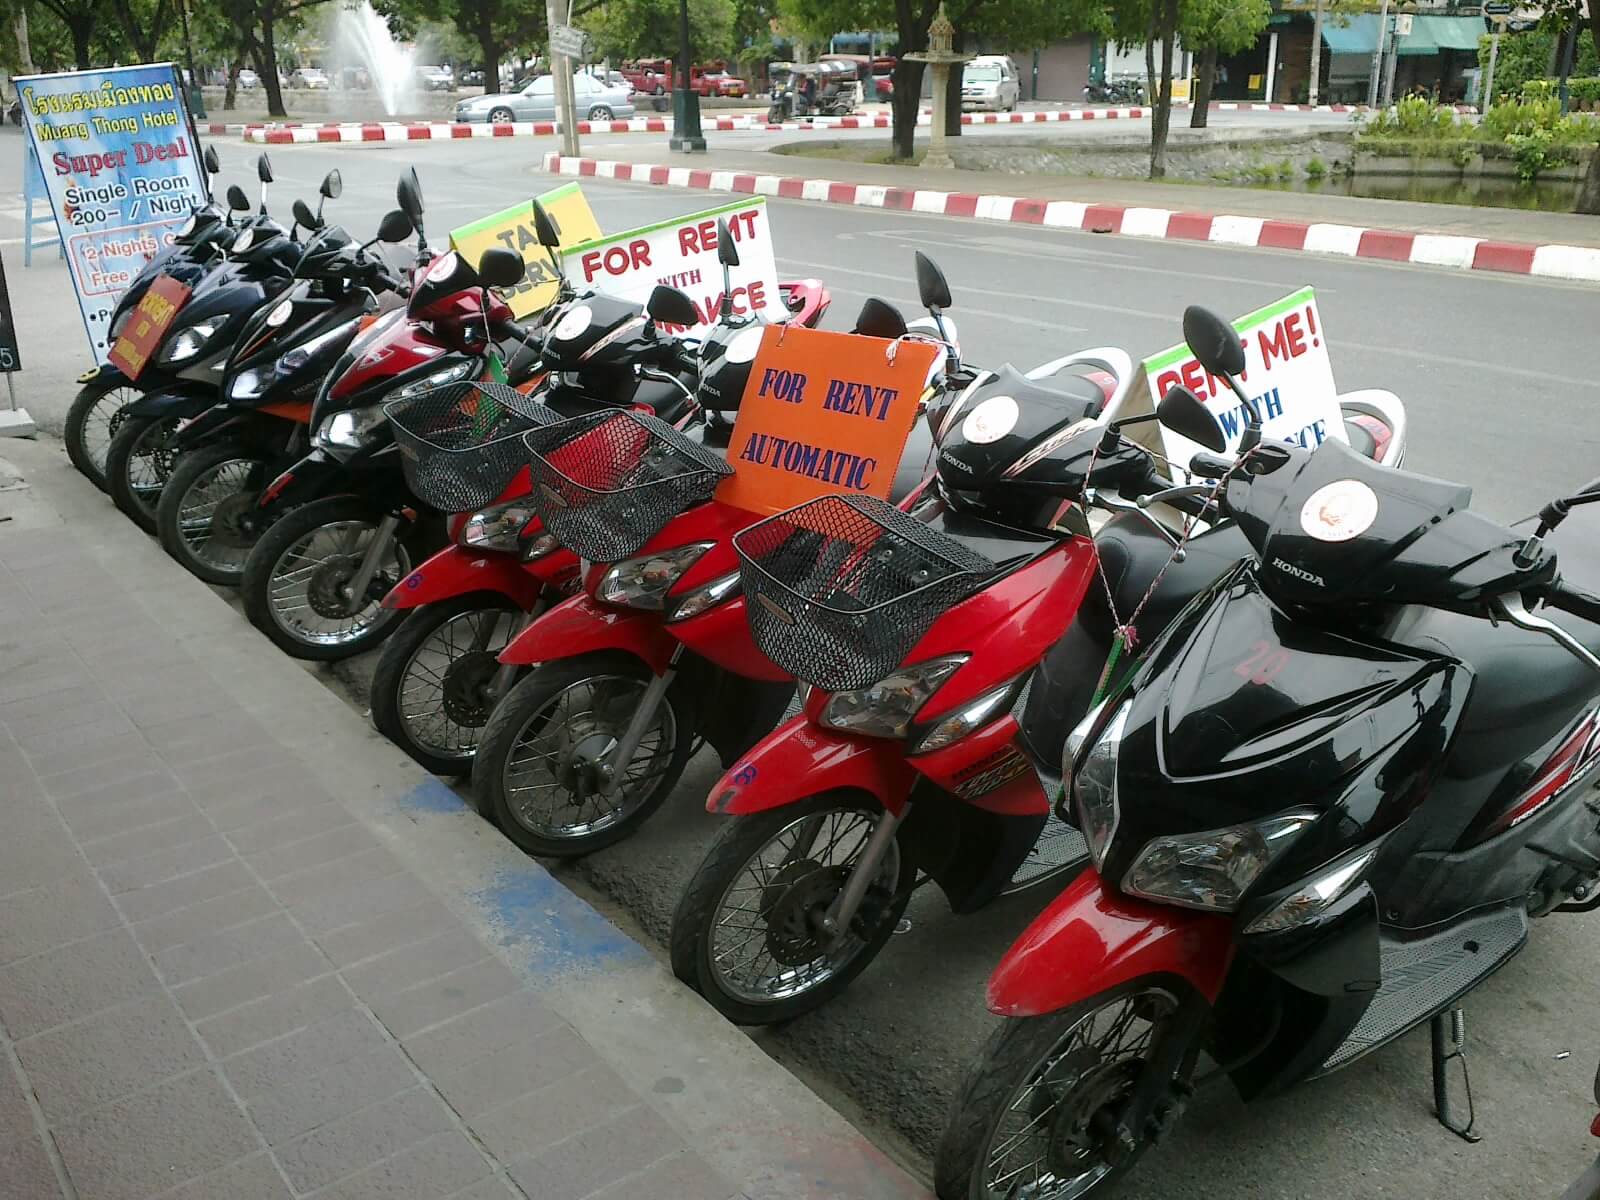 Liên hệ thuê xe máy tại Sầm Sơn giá rẻ, uy tín nhất